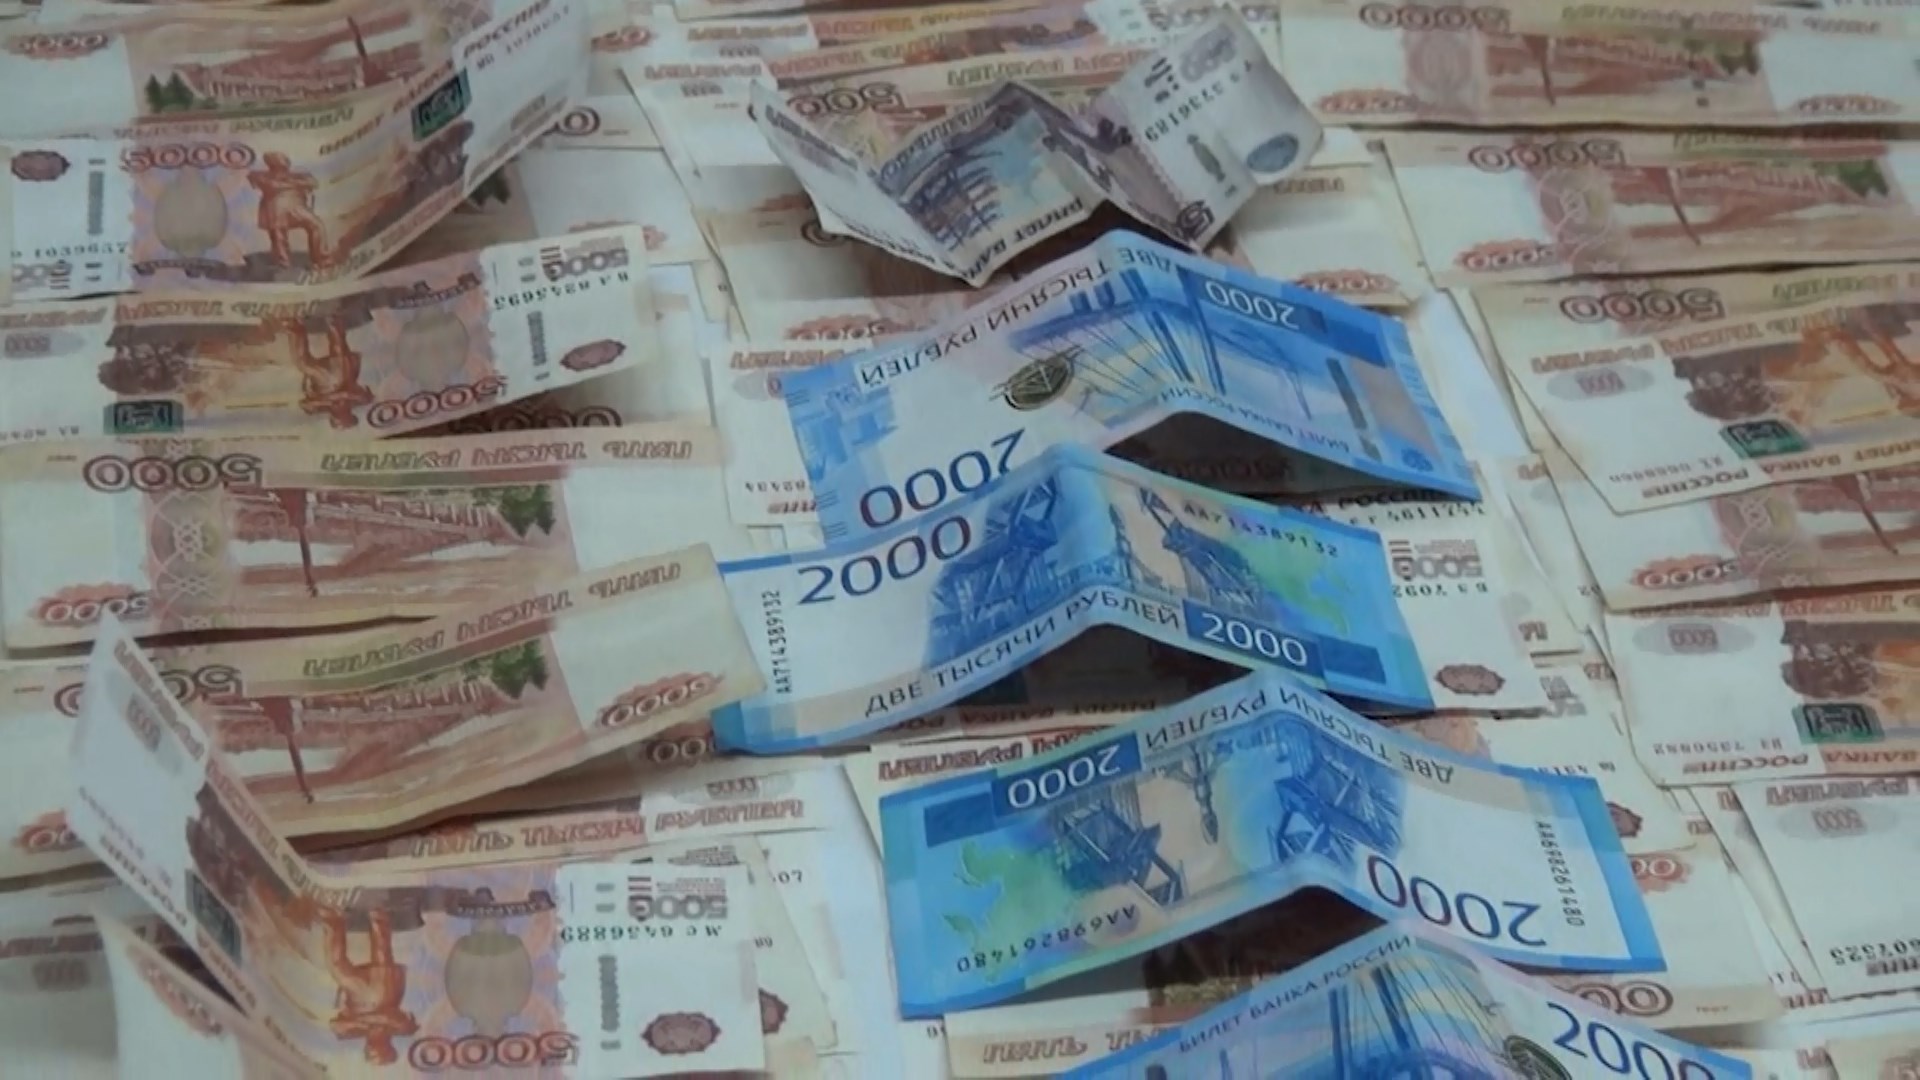 Полицейские задержали курьера, обманом собравшего с костромских пенсионеров 2 миллиона